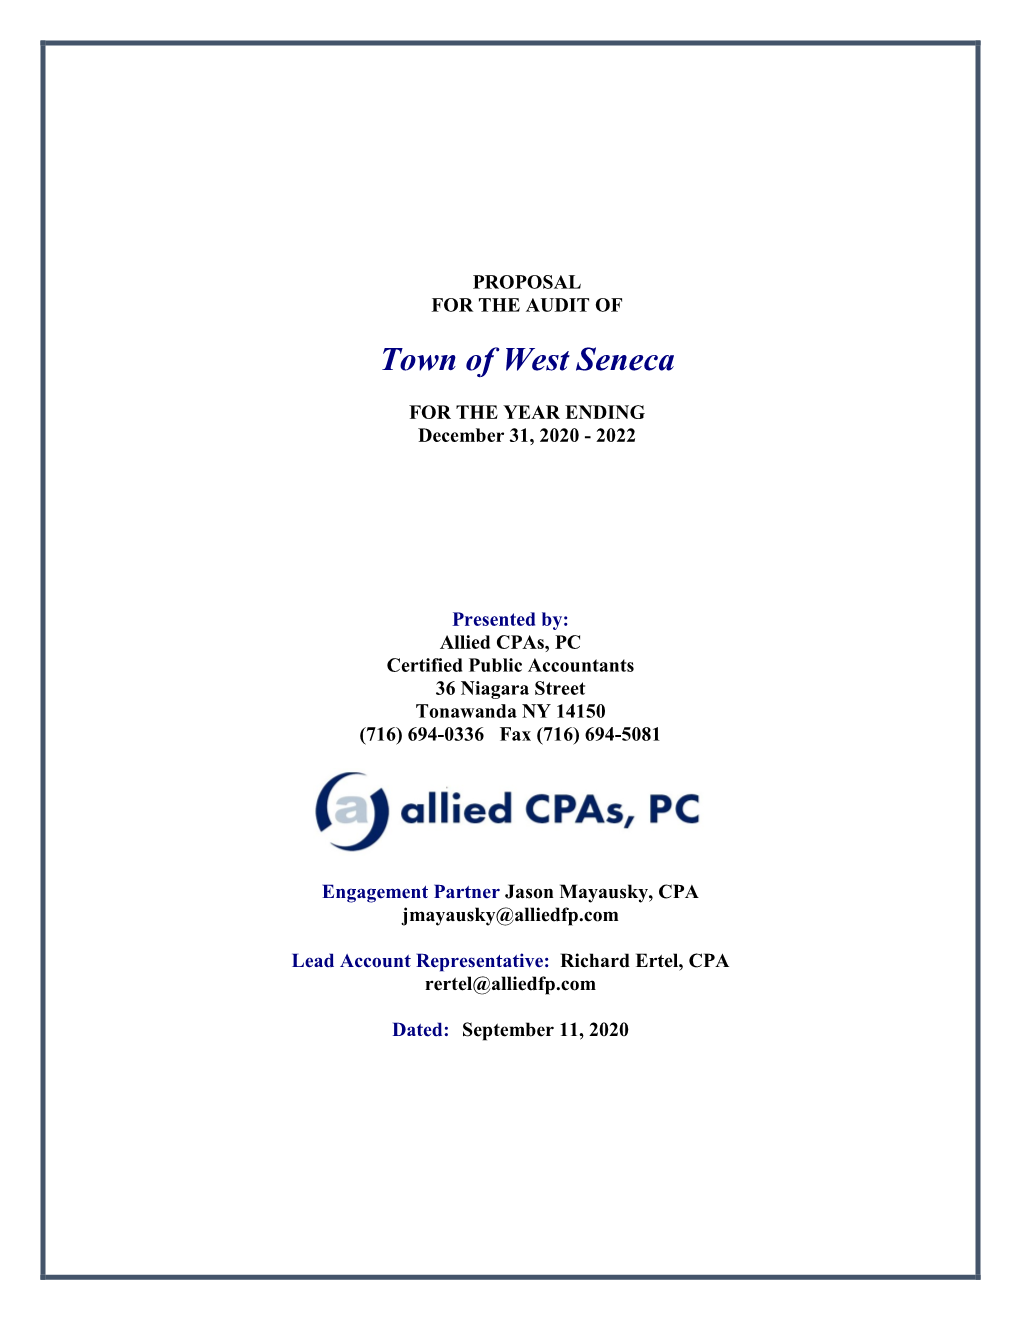 Allied Cpas, PC Certified Public Accountants 36 Niagara Street Tonawanda NY 14150 (716) 694-0336 Fax (716) 694-5081